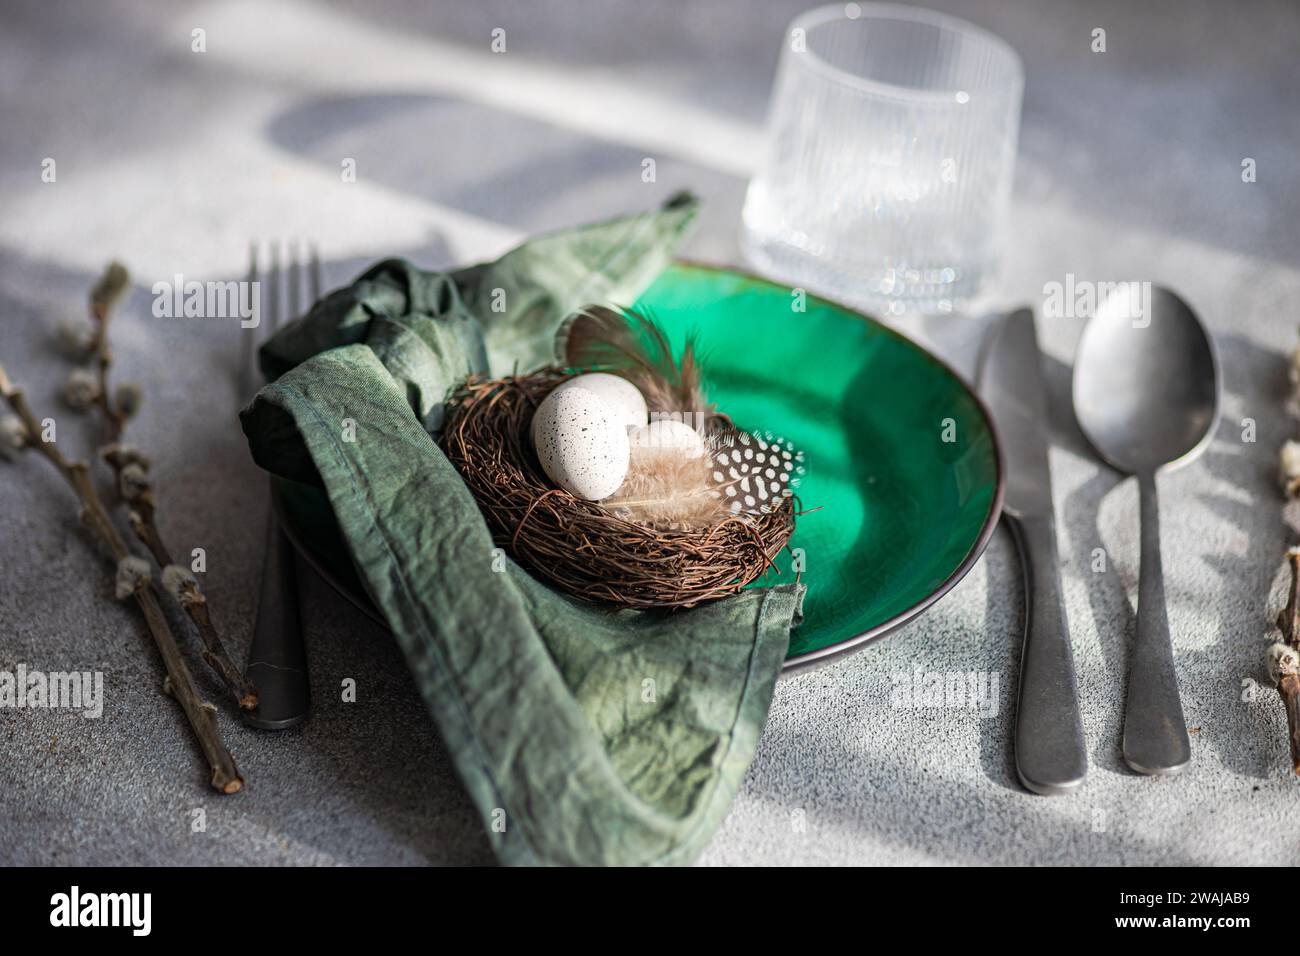 Angle élevé de la table de Pâques, présentant une assiette en céramique verte vibrante avec un petit nid avec des œufs tachetés et des plumes, placé sur une surface grise Banque D'Images